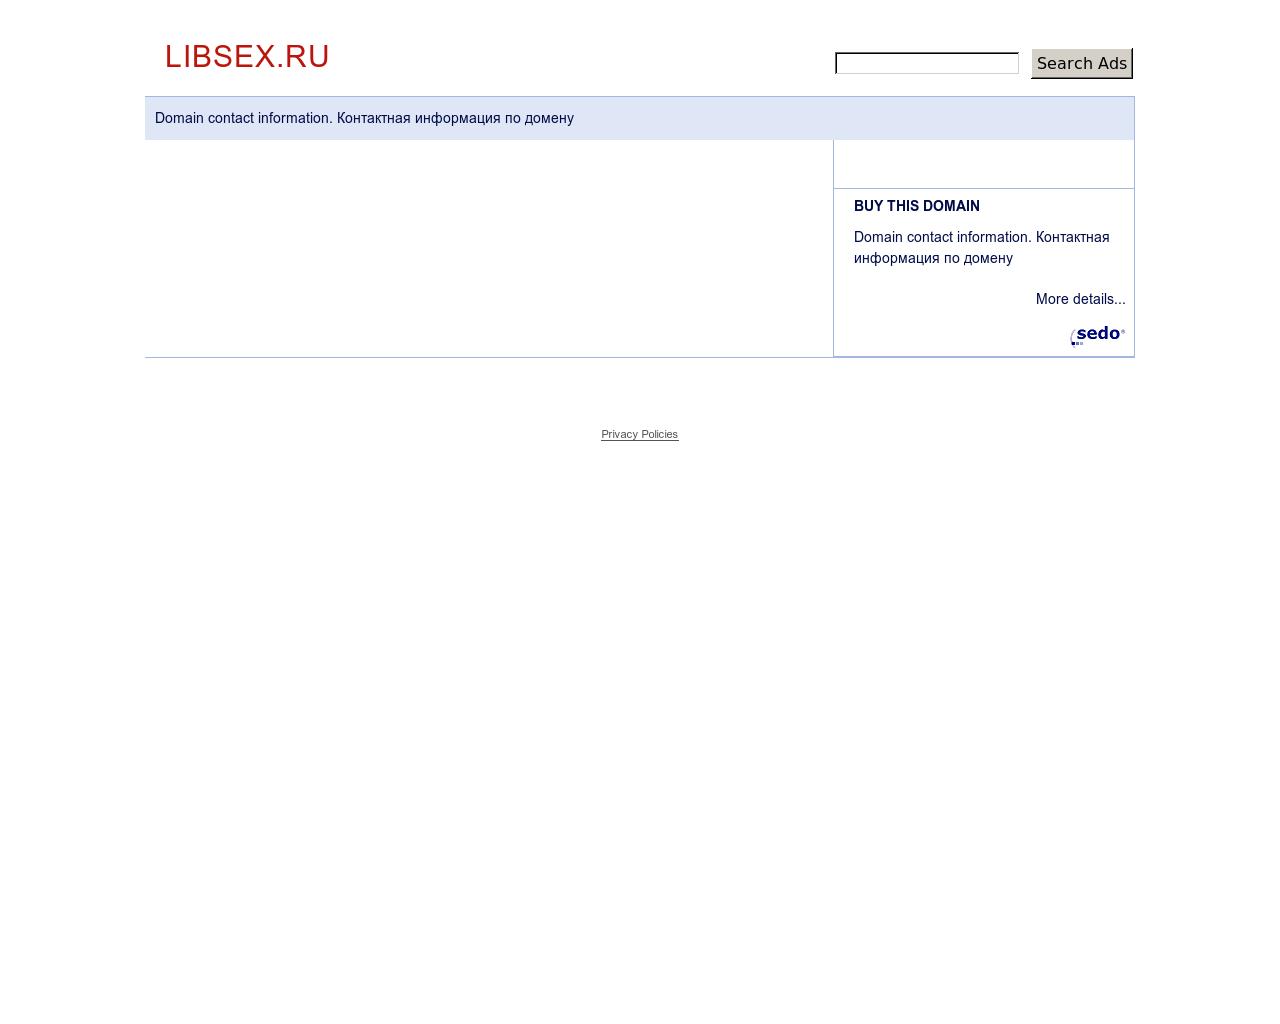 Изображение сайта libsex.ru в разрешении 1280x1024